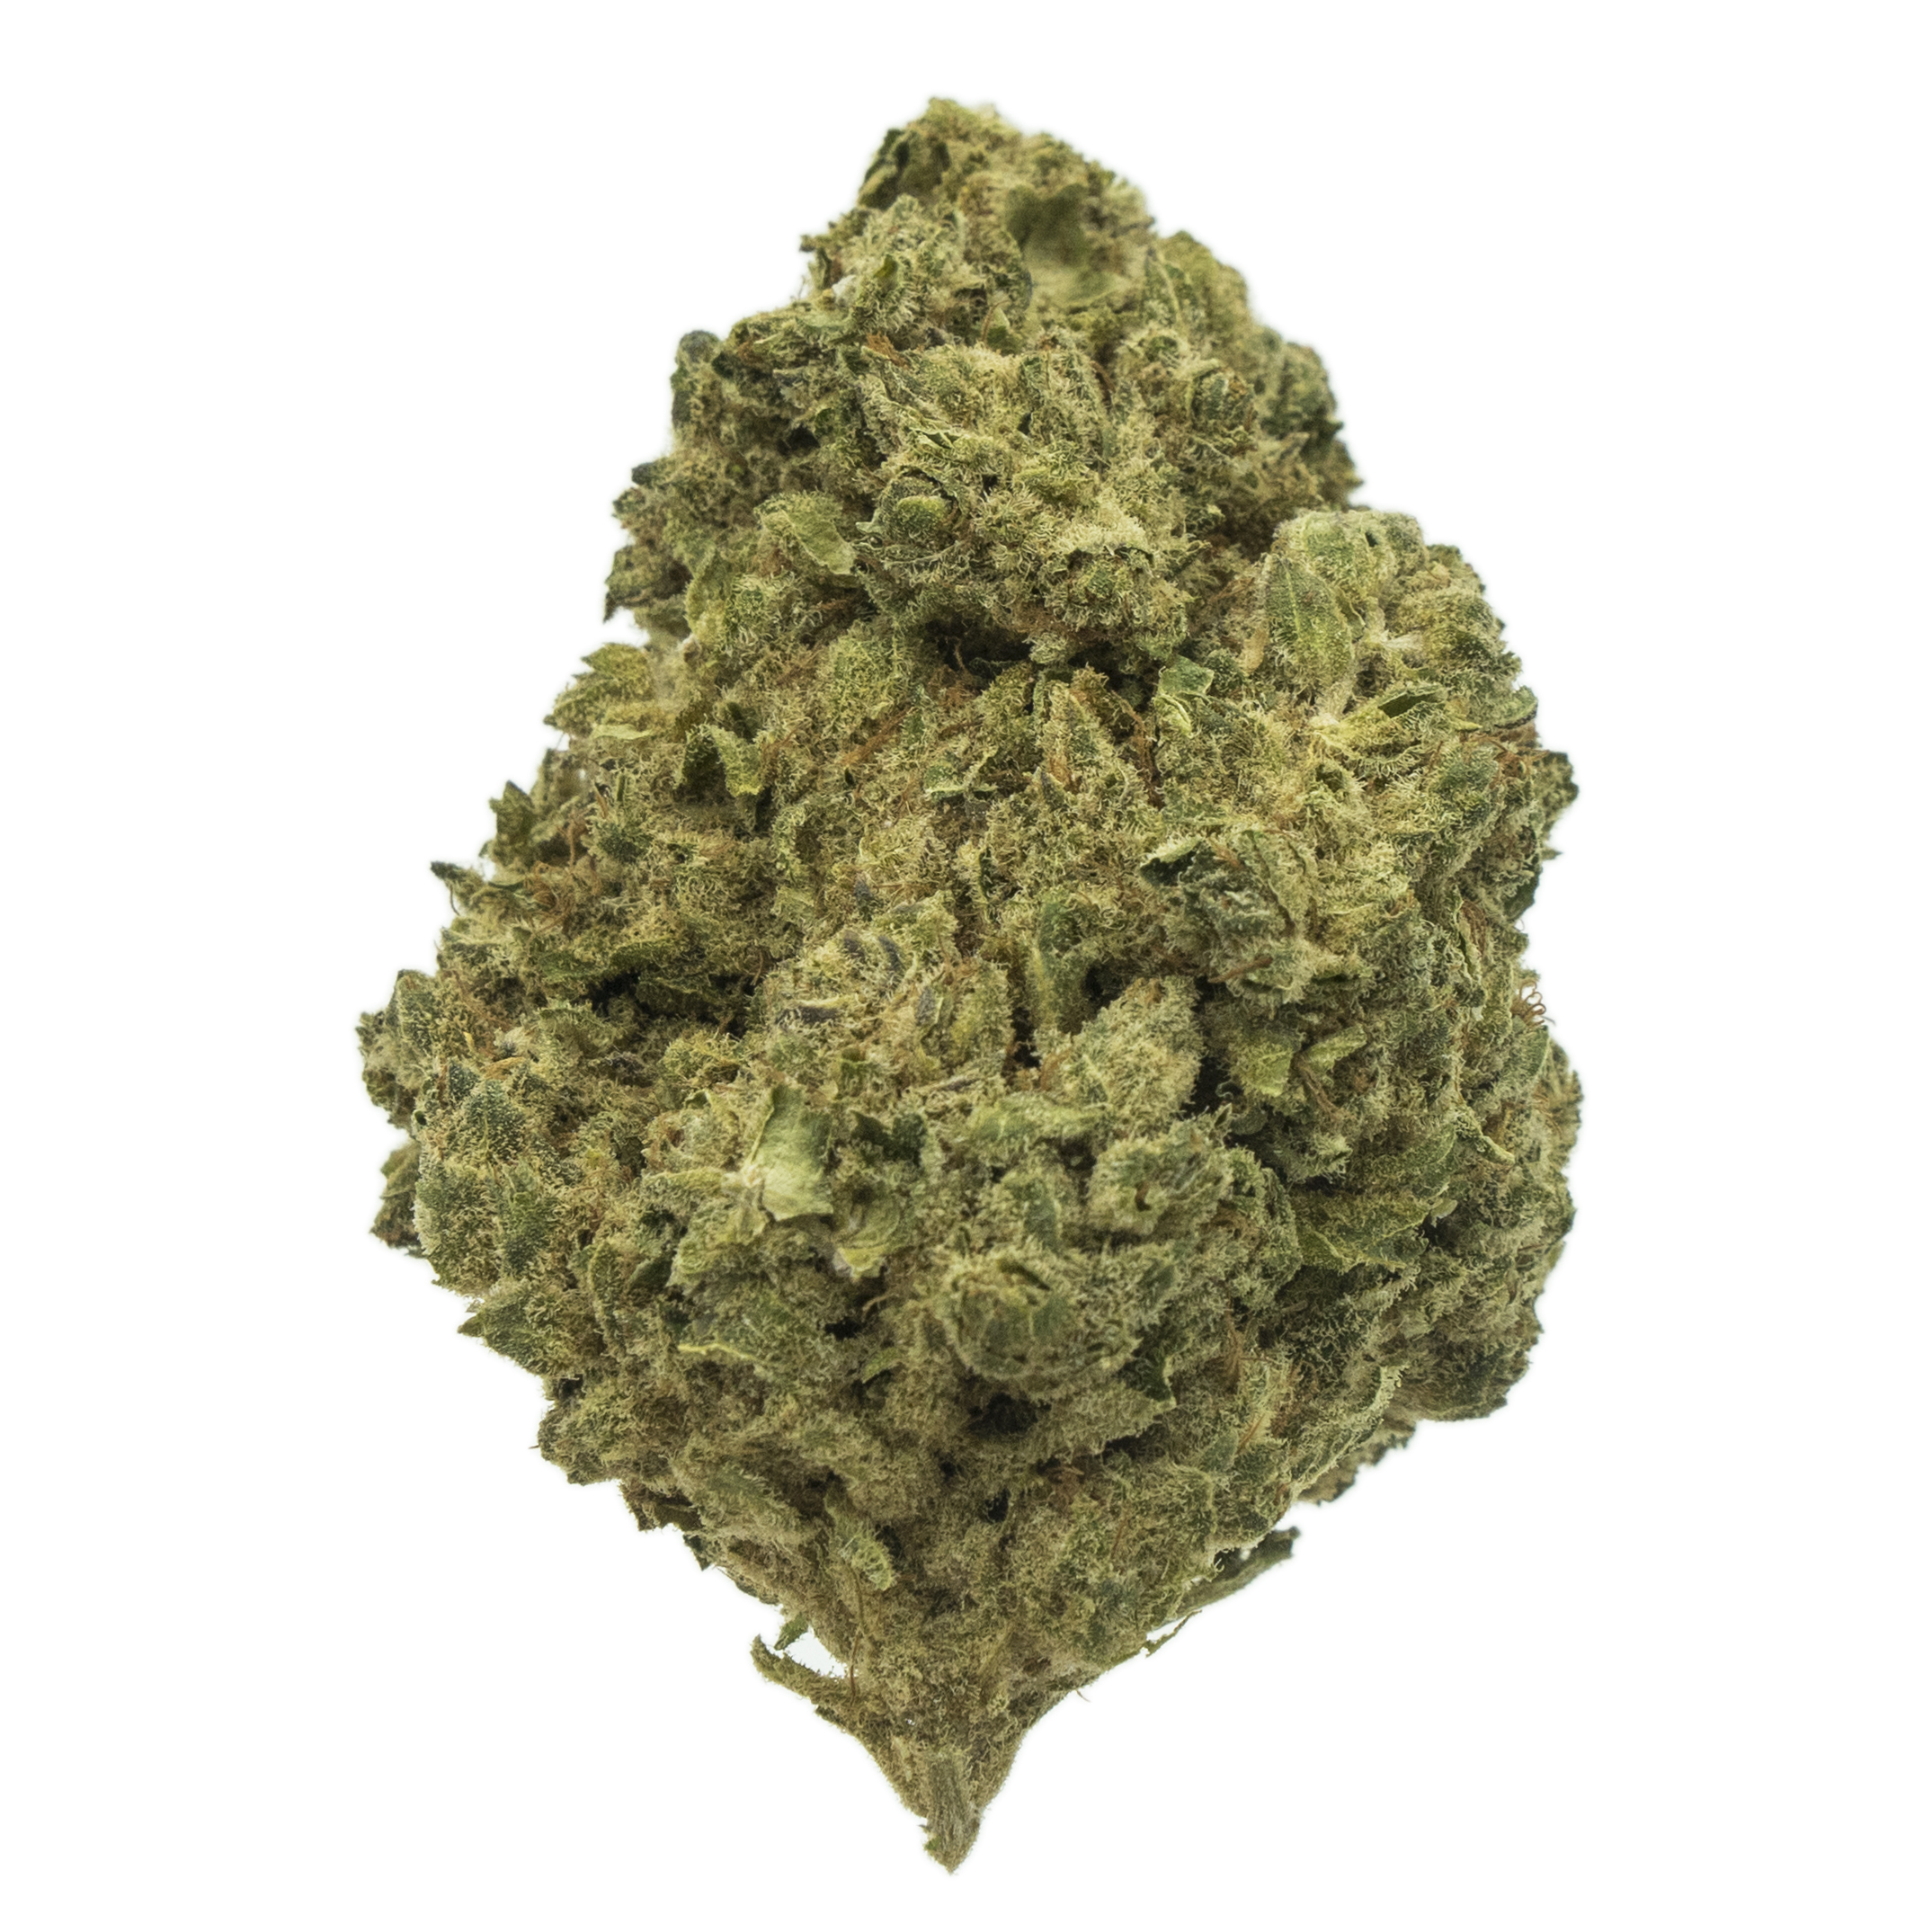 Skywalker - CBD Flower - CBD Bud - CBD Weed